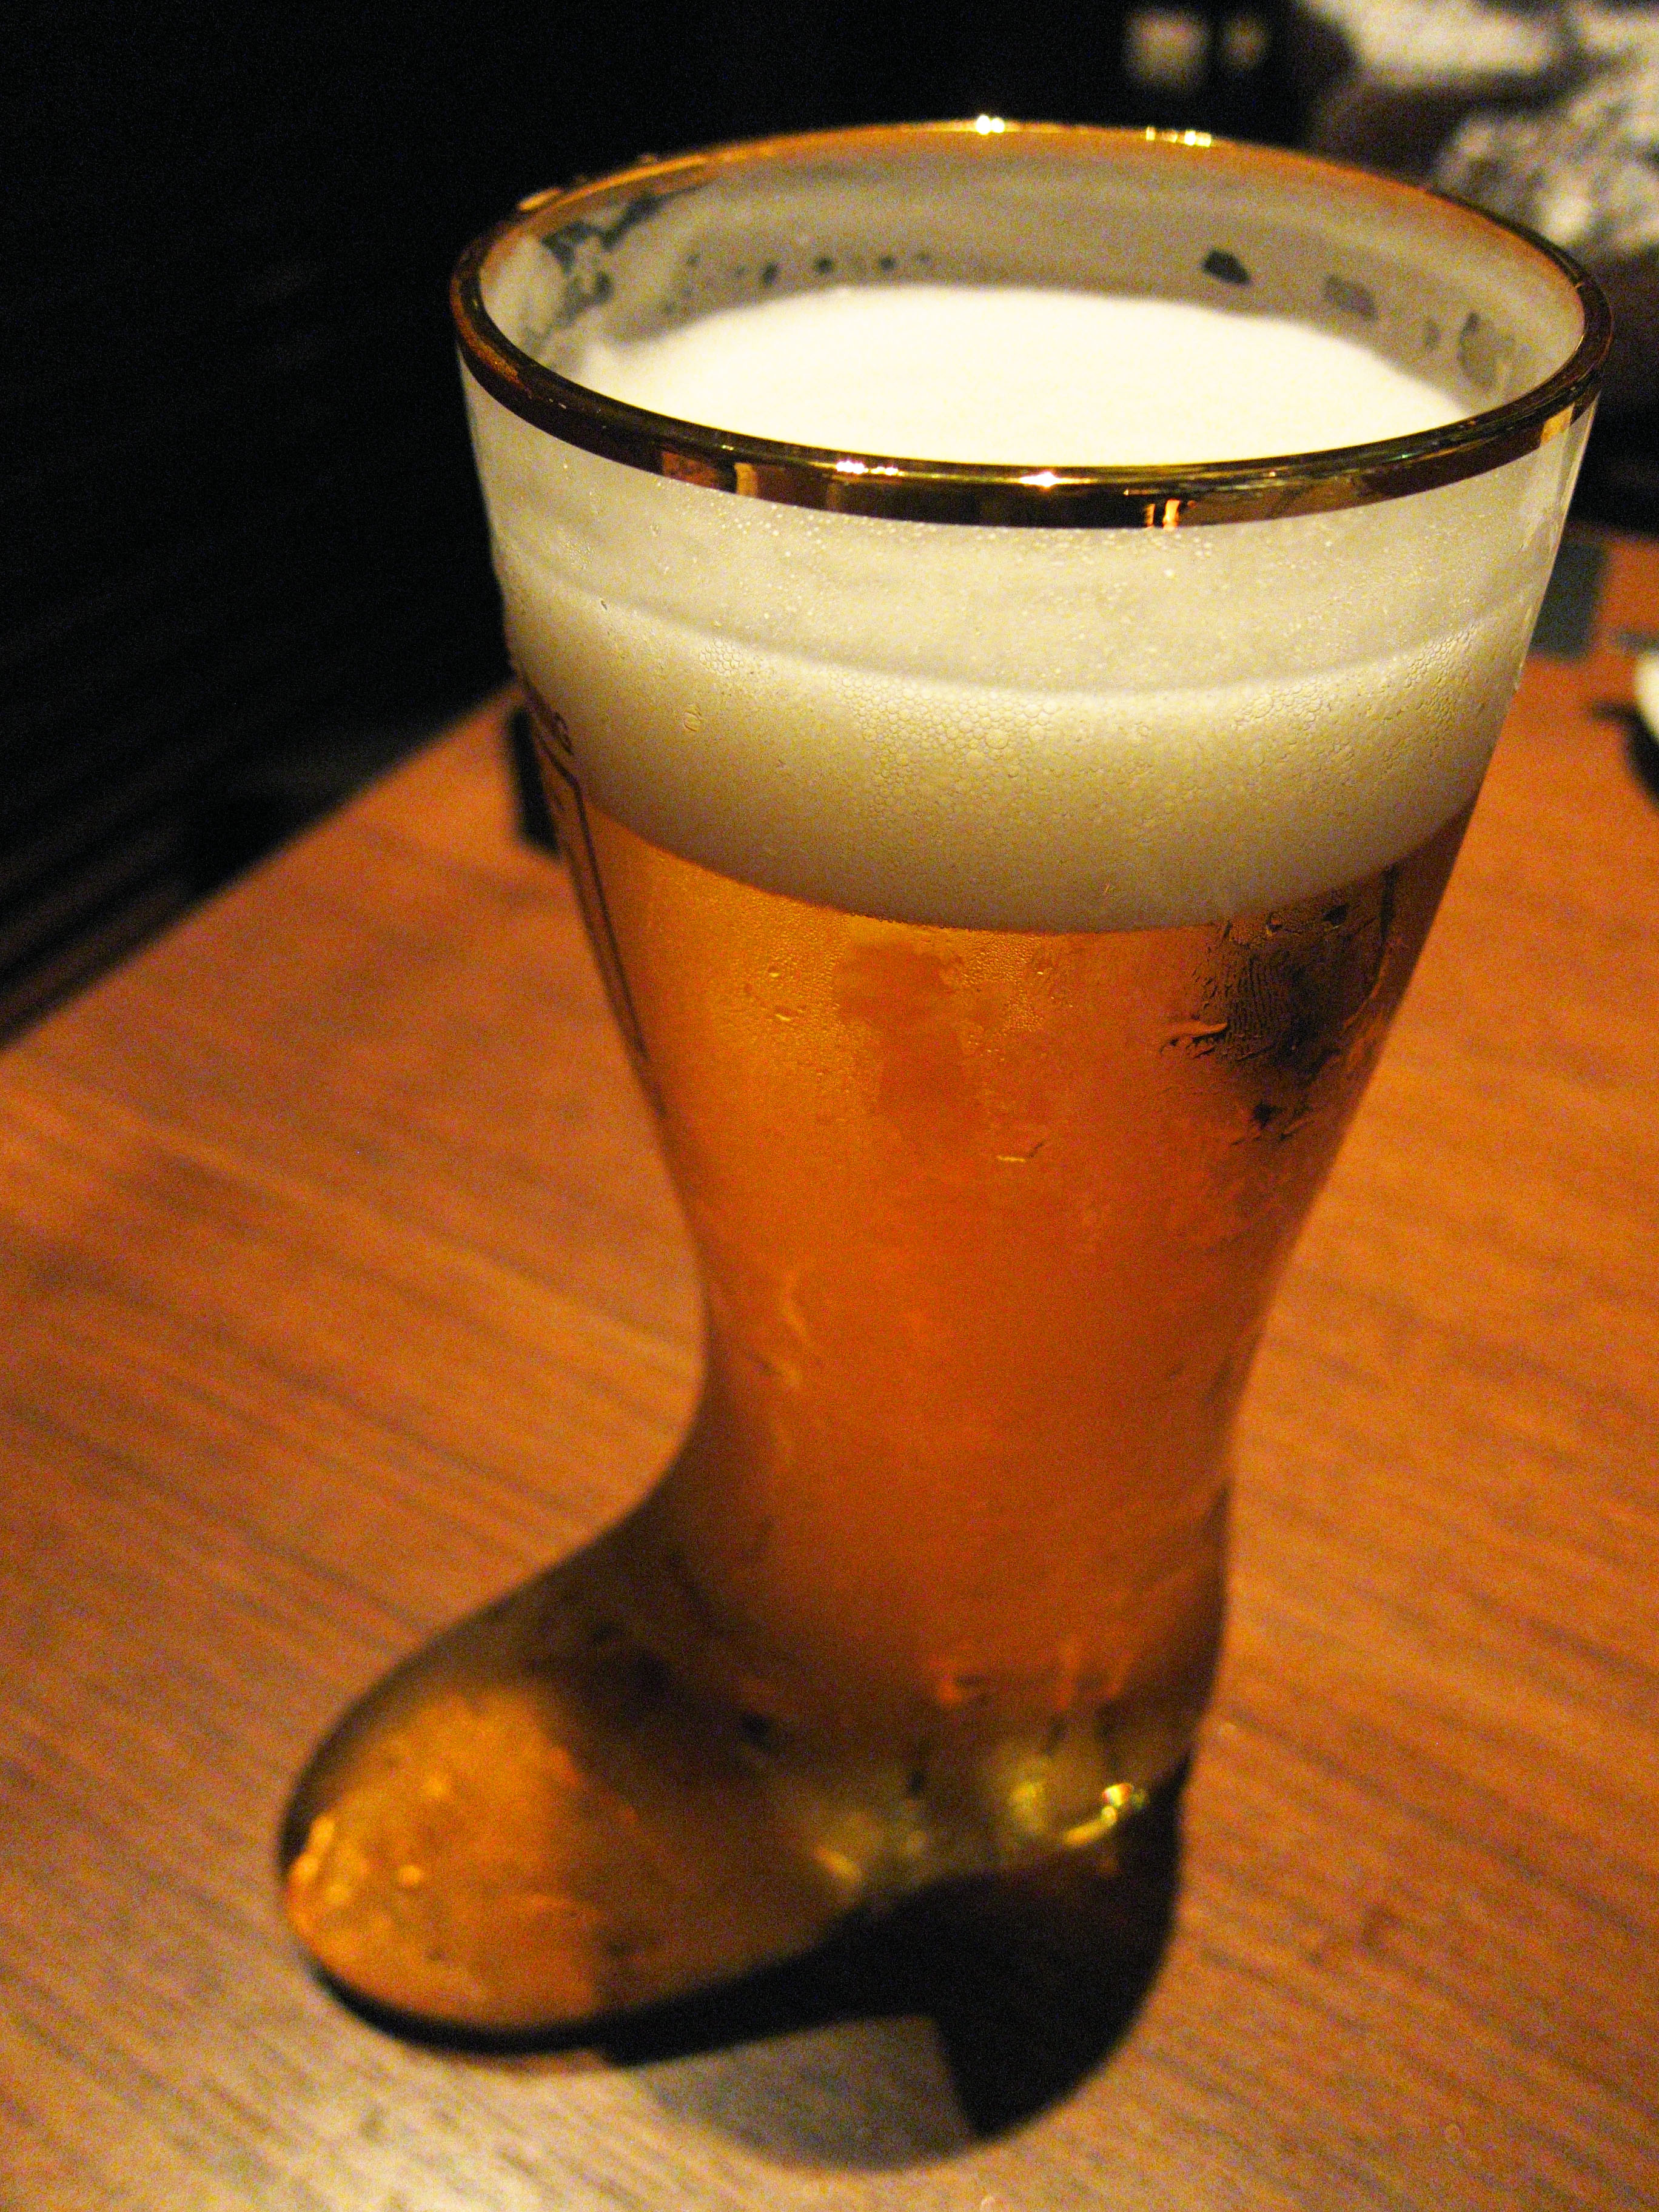 ゆんフリー写真素材集 No 186 長靴型グラスのビール 日本 東京